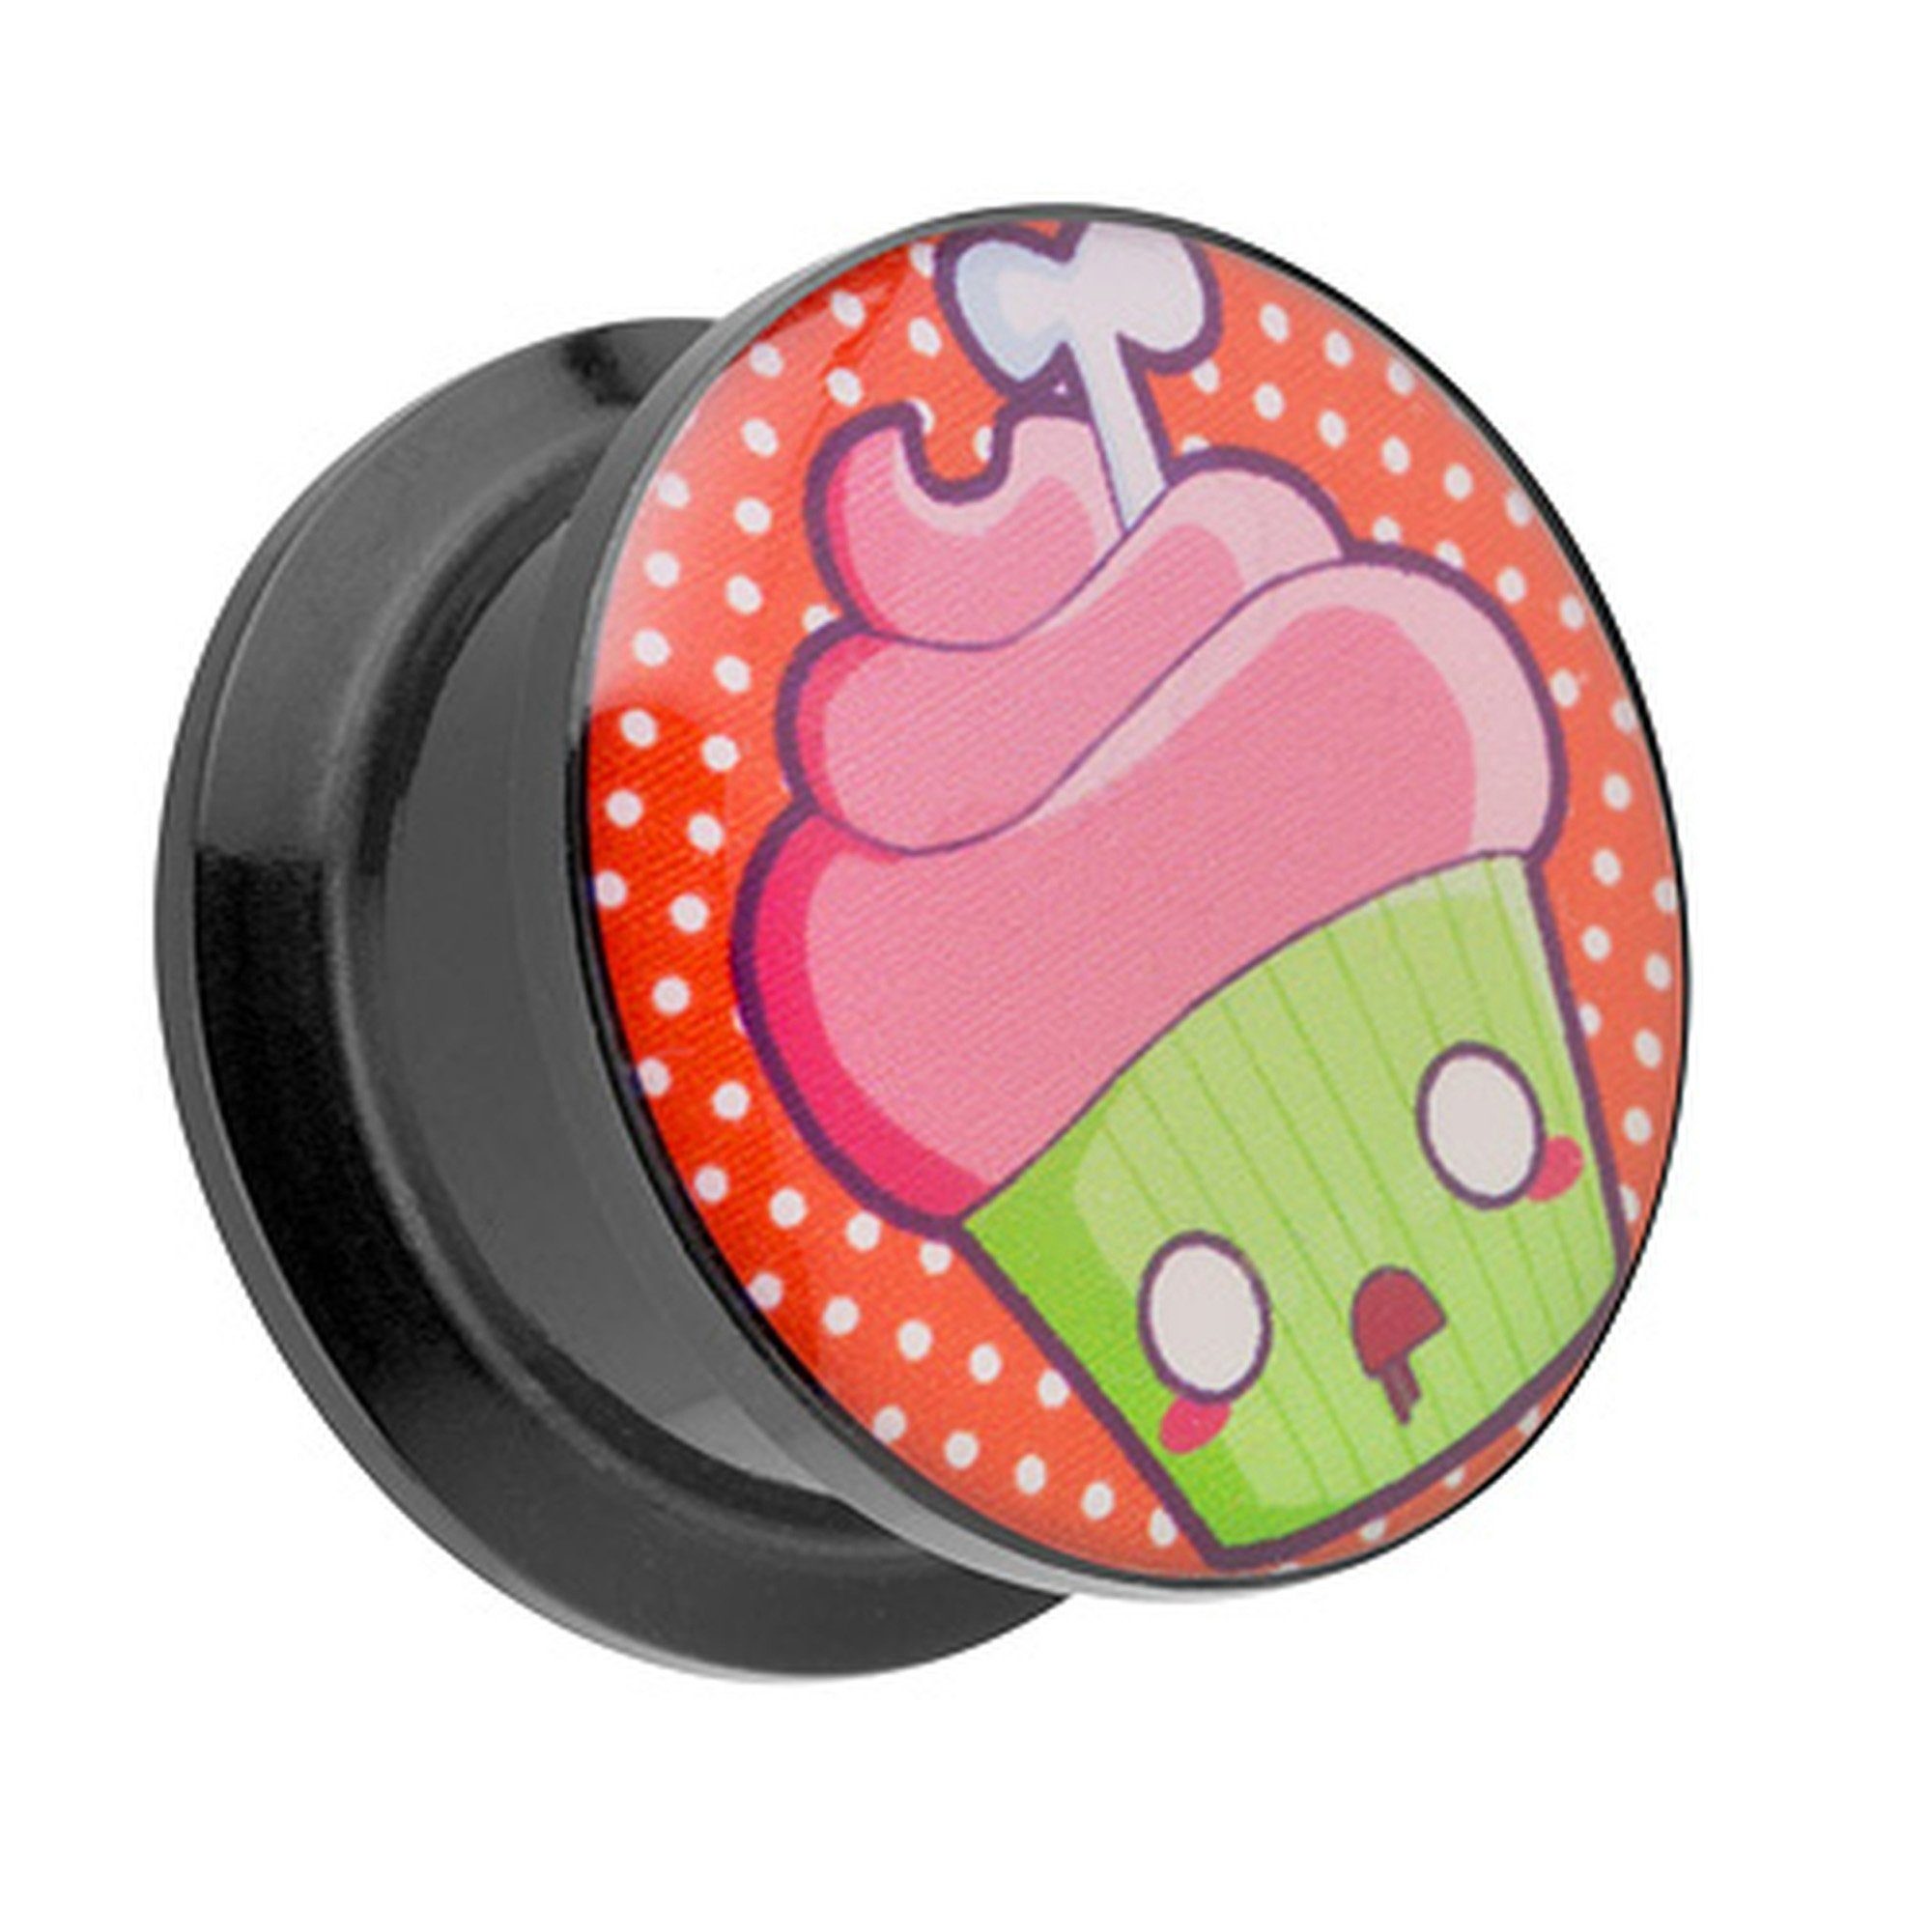 Taffstyle Plug Piercing Schraubverschluß Tote Cupcake Muffin, Ohr Plug Flesh Tunnel Ohrpiercing Kunststoff Schraub Picture mit Tote